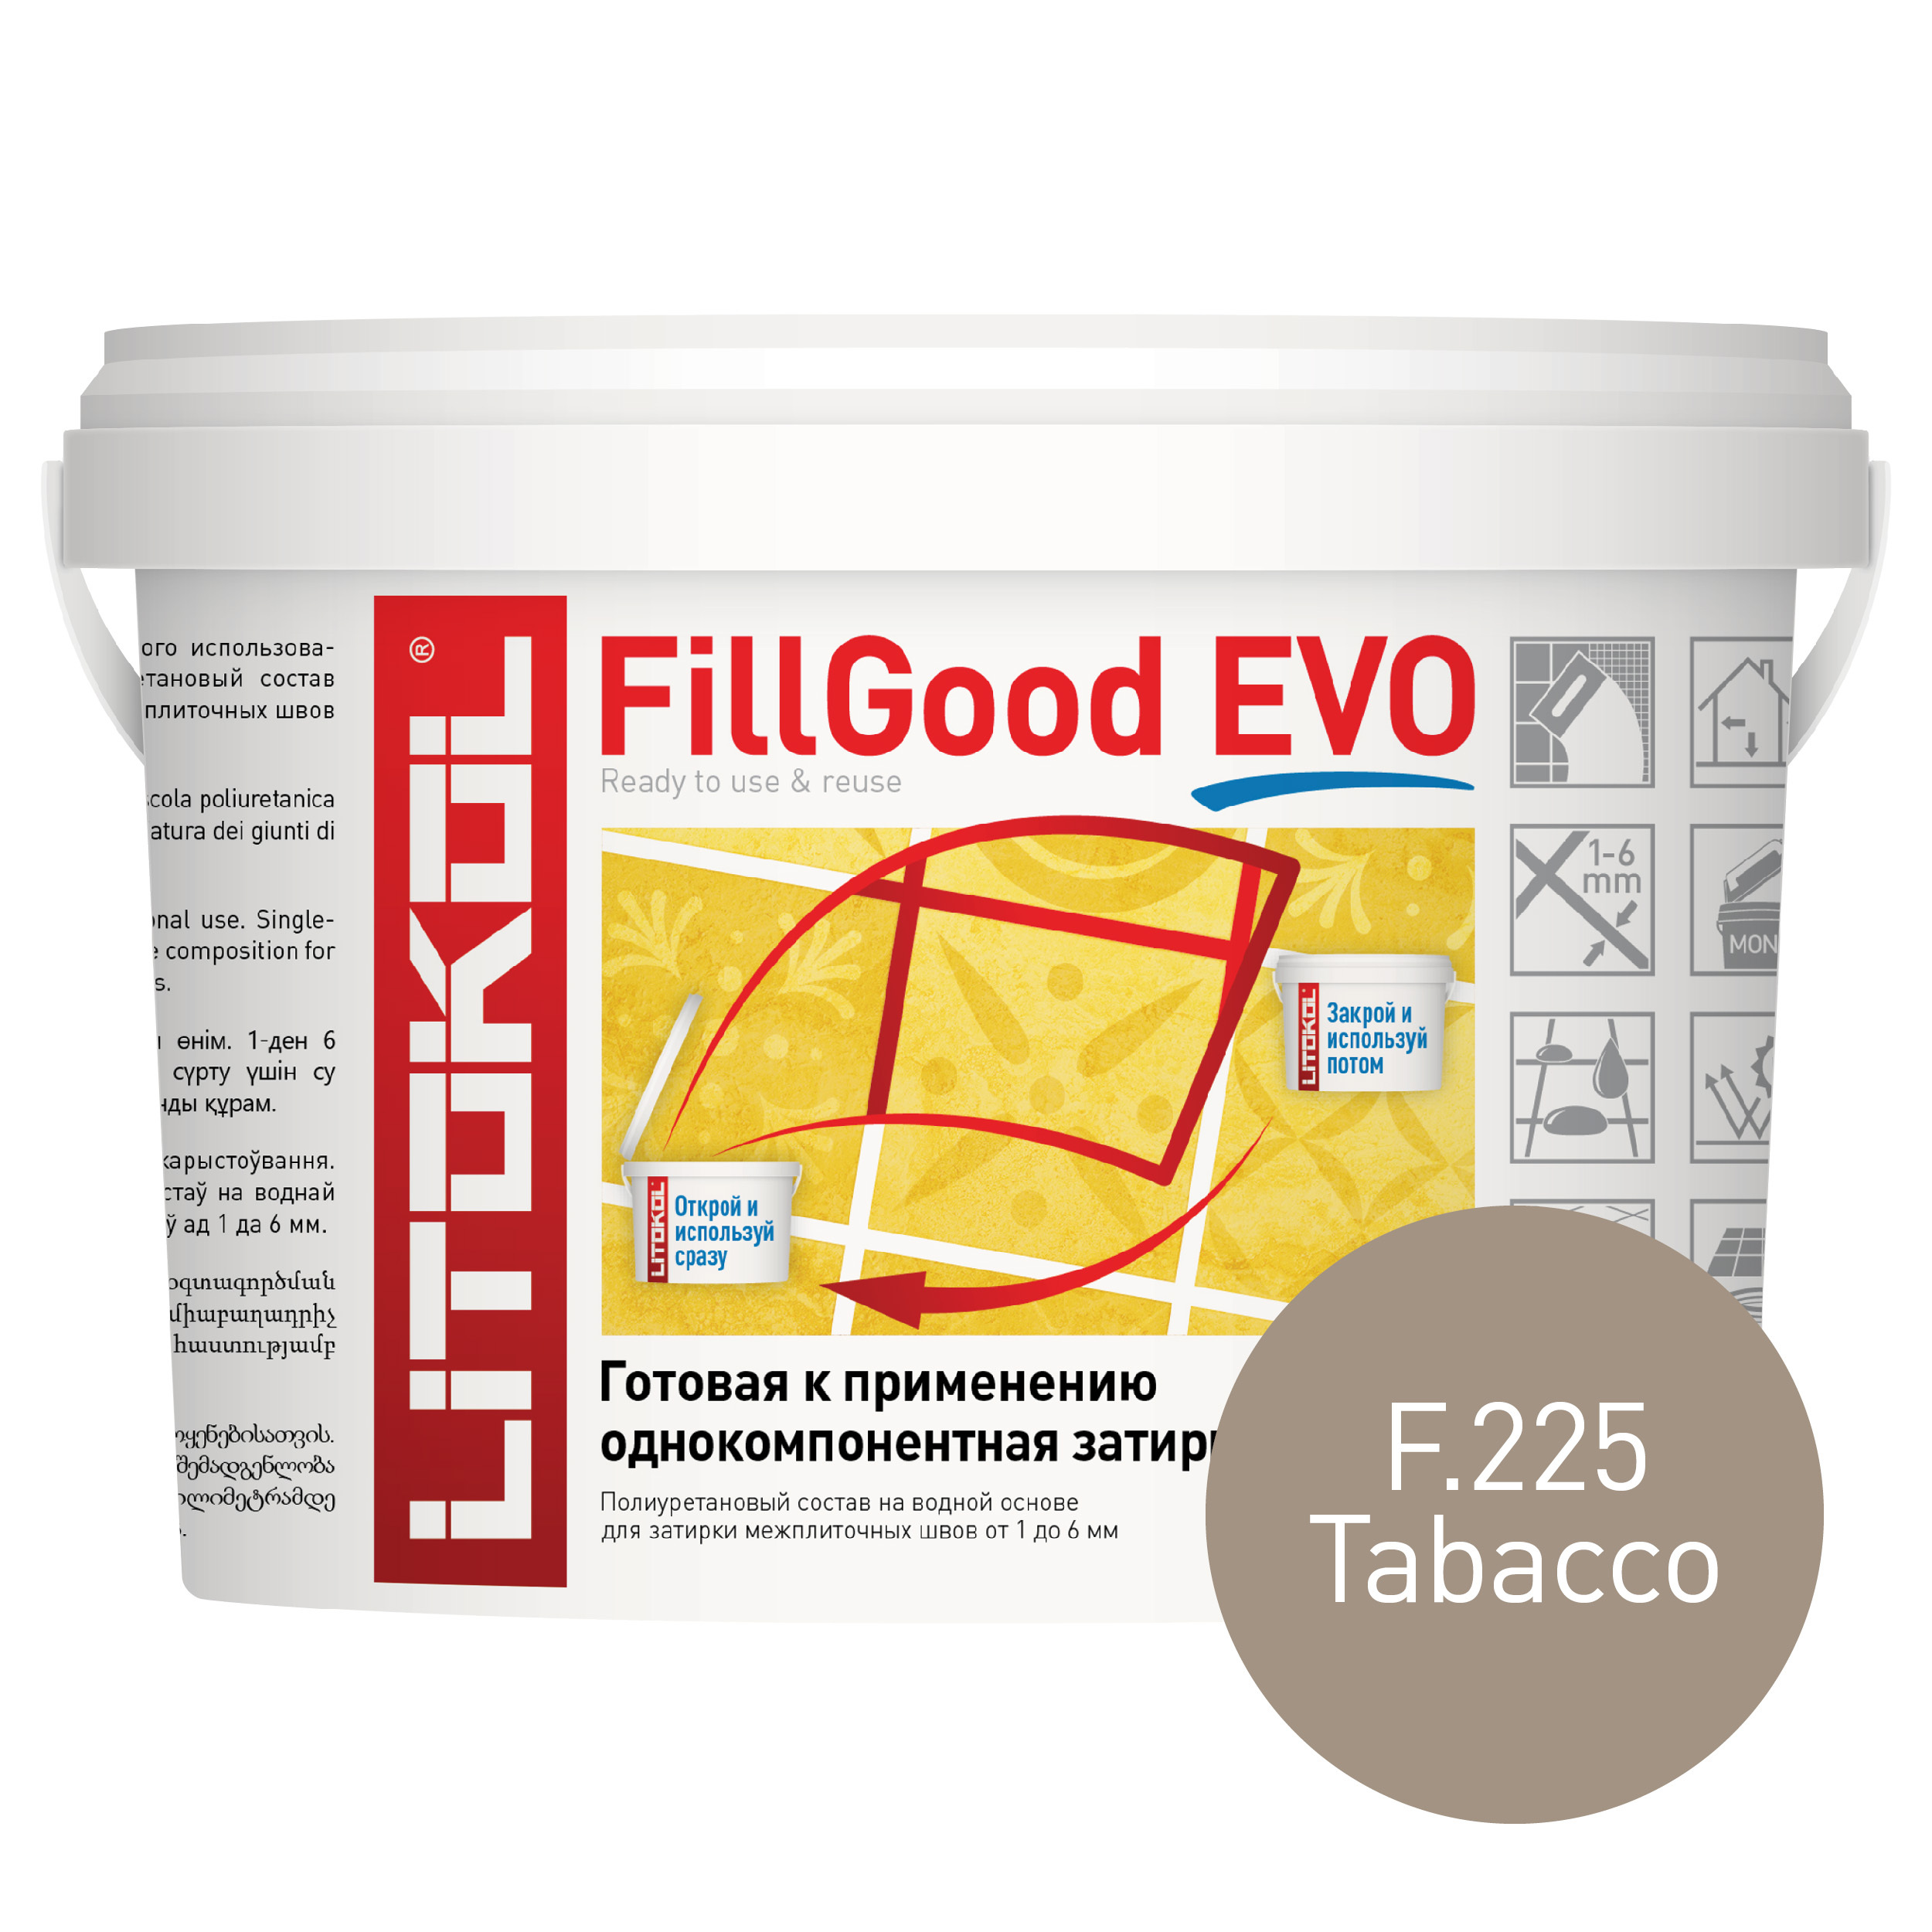 Затирка полиуретановая Litokol FillGood Evo F.225 табачная 2 кг поршень полиуретановый 11 мм